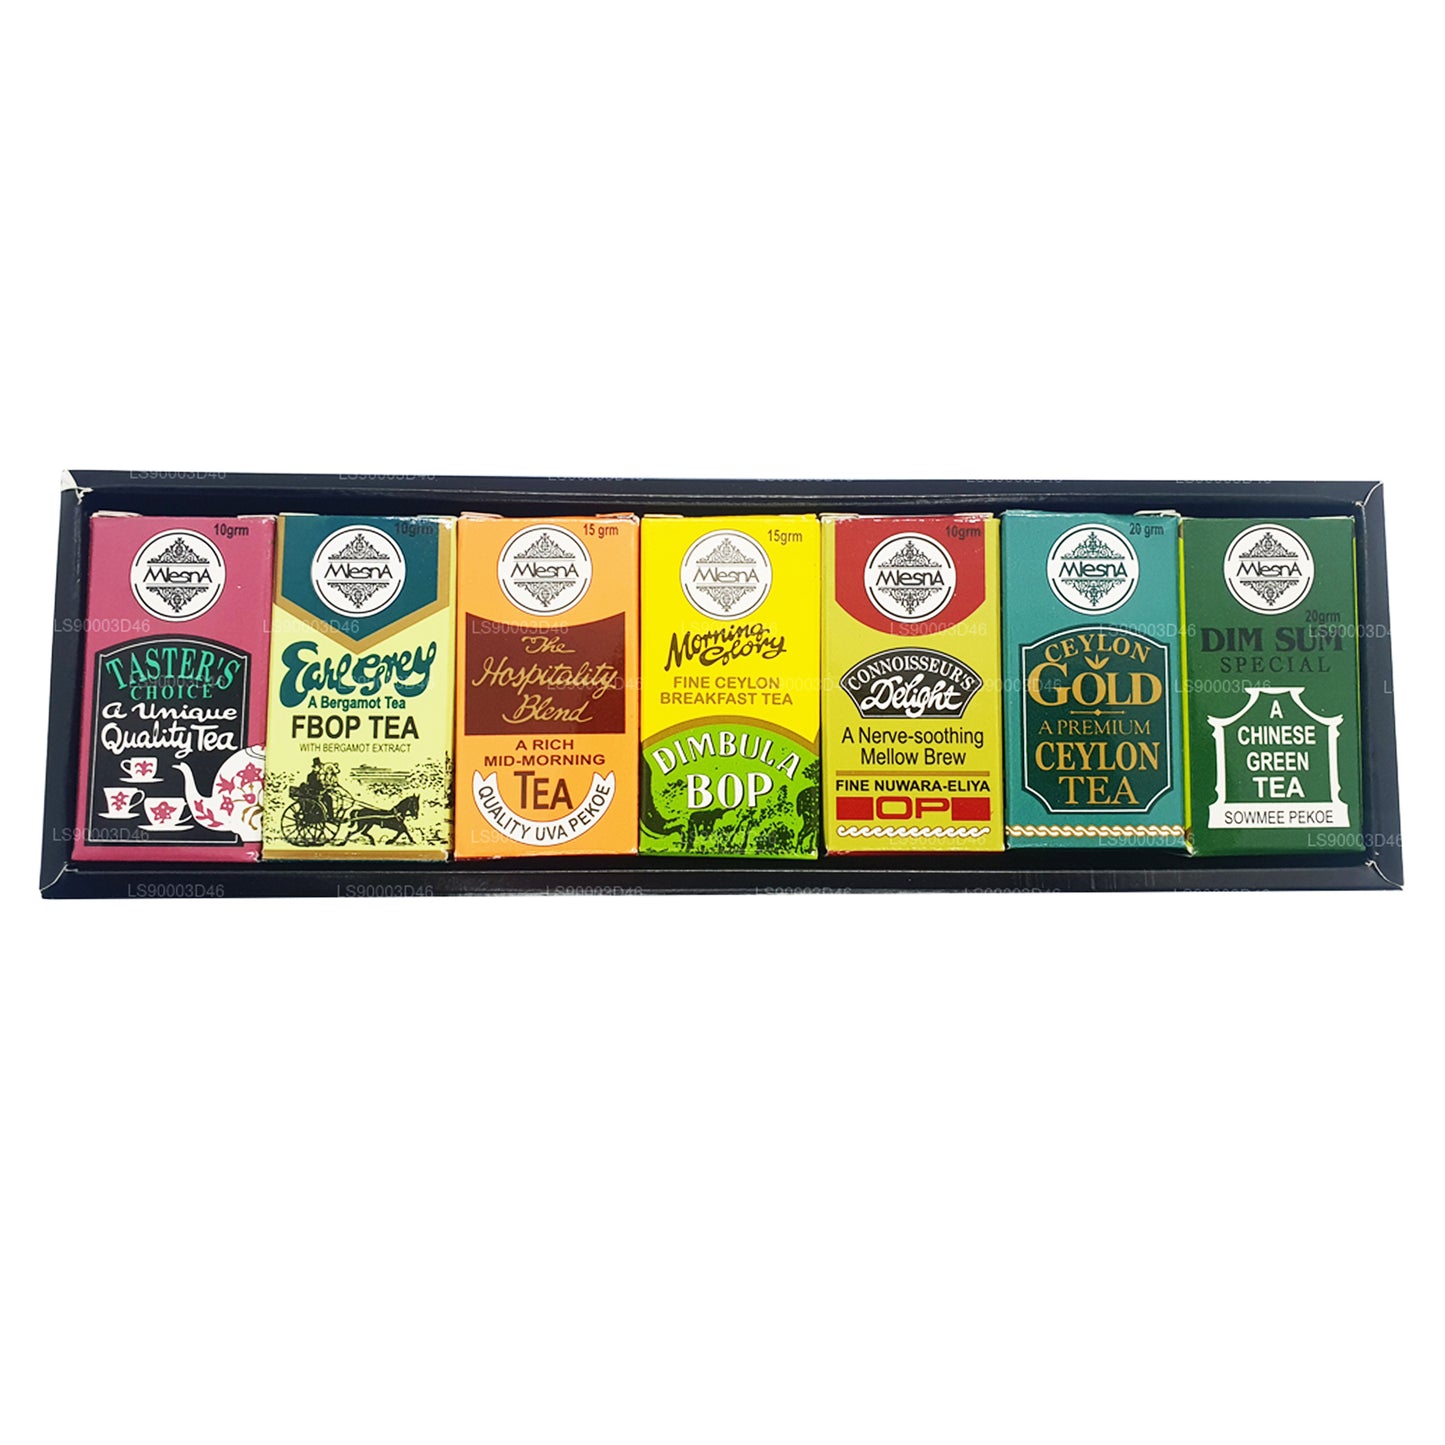 Mlesna Tea Taster's Choice 7 Assorted Tea (100g)